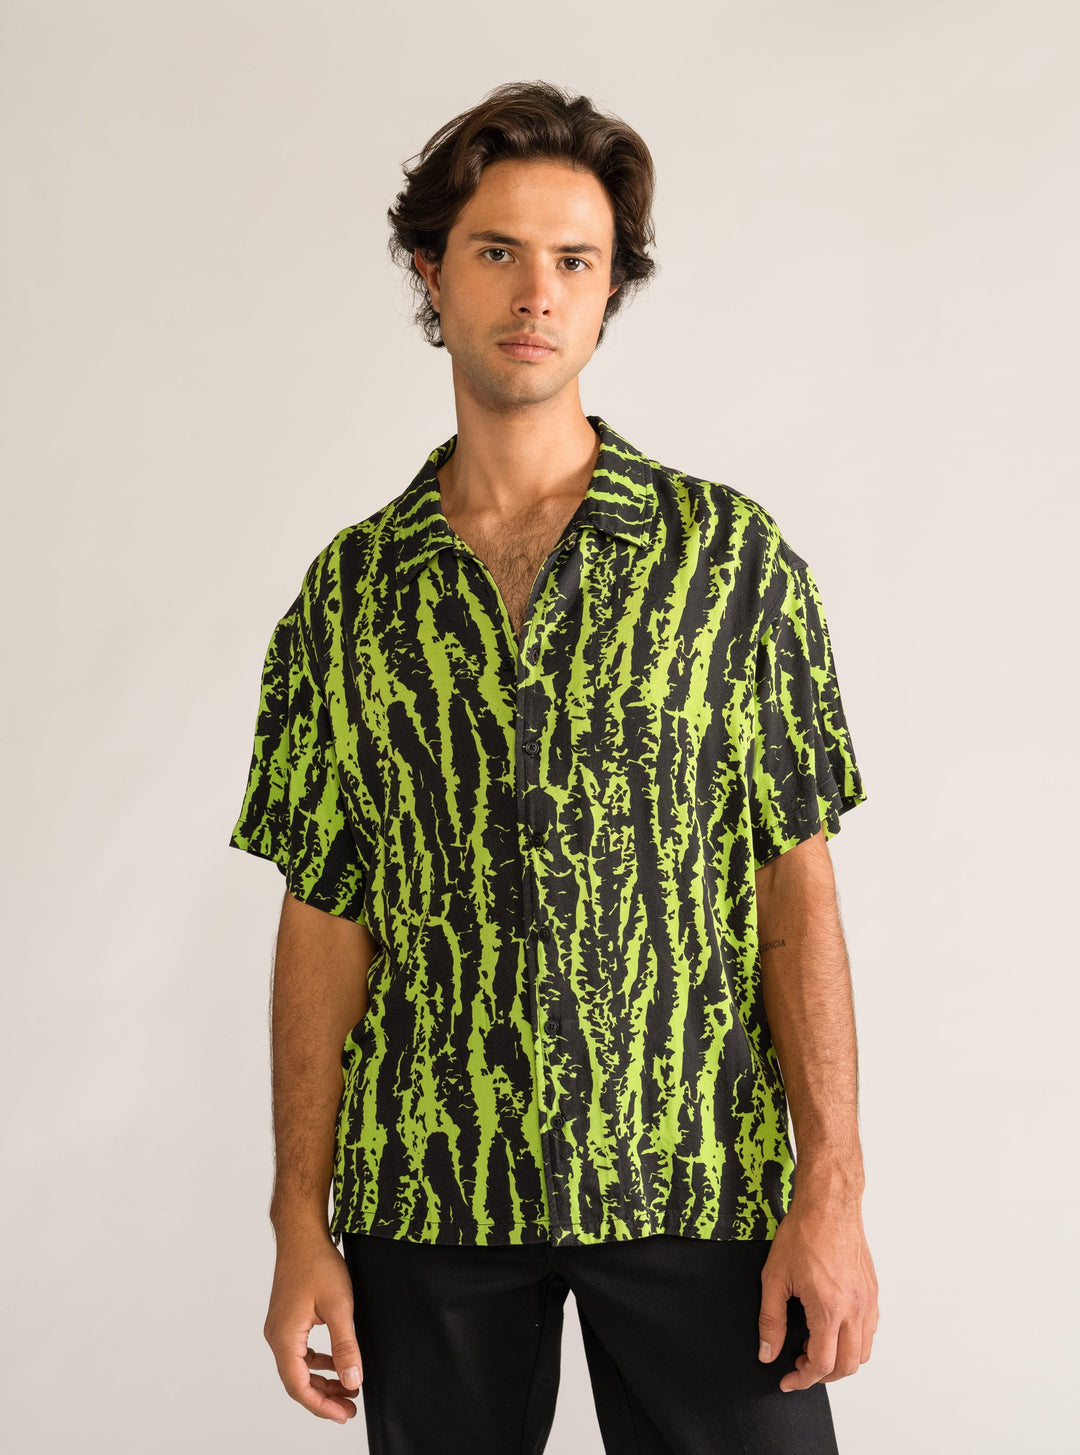 Rizoma Shirt, Green